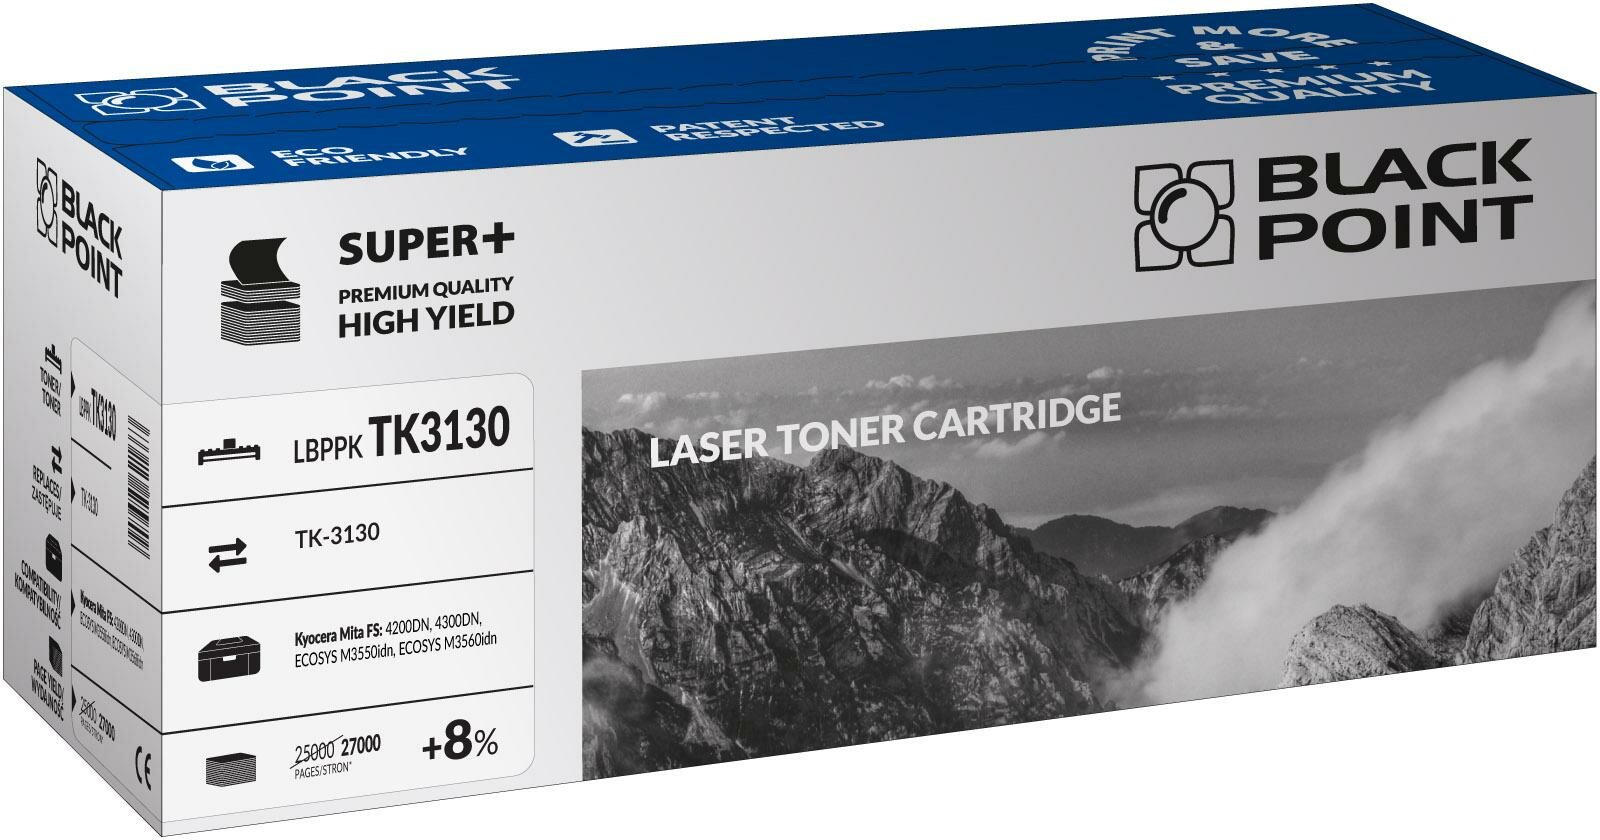 Toner laserowy Black Point Super Plus LBPPKTK3130 widok pod kątem na opakowanie